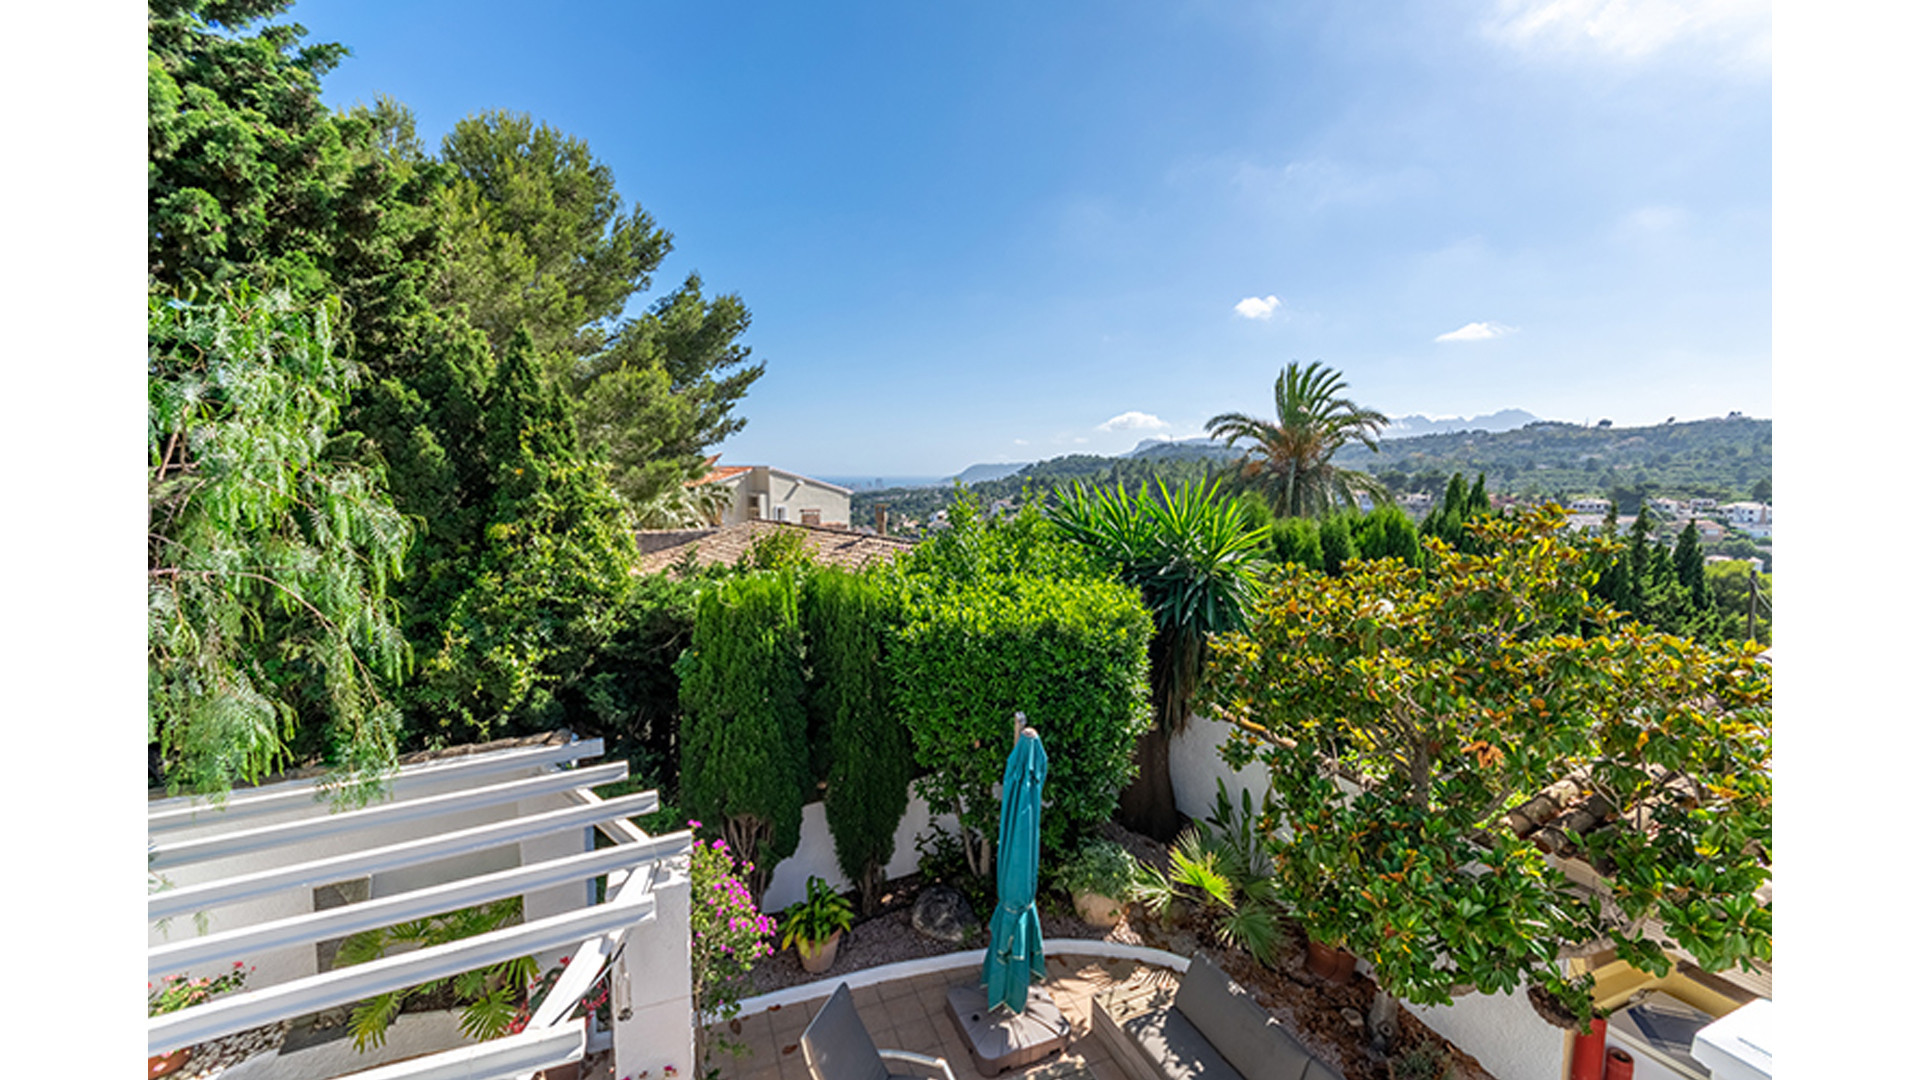 ZIEN: Te koop deze prachtige vrijstaande villa aan de Spaanse Costa Blanca met zwembad en eigen vijver!